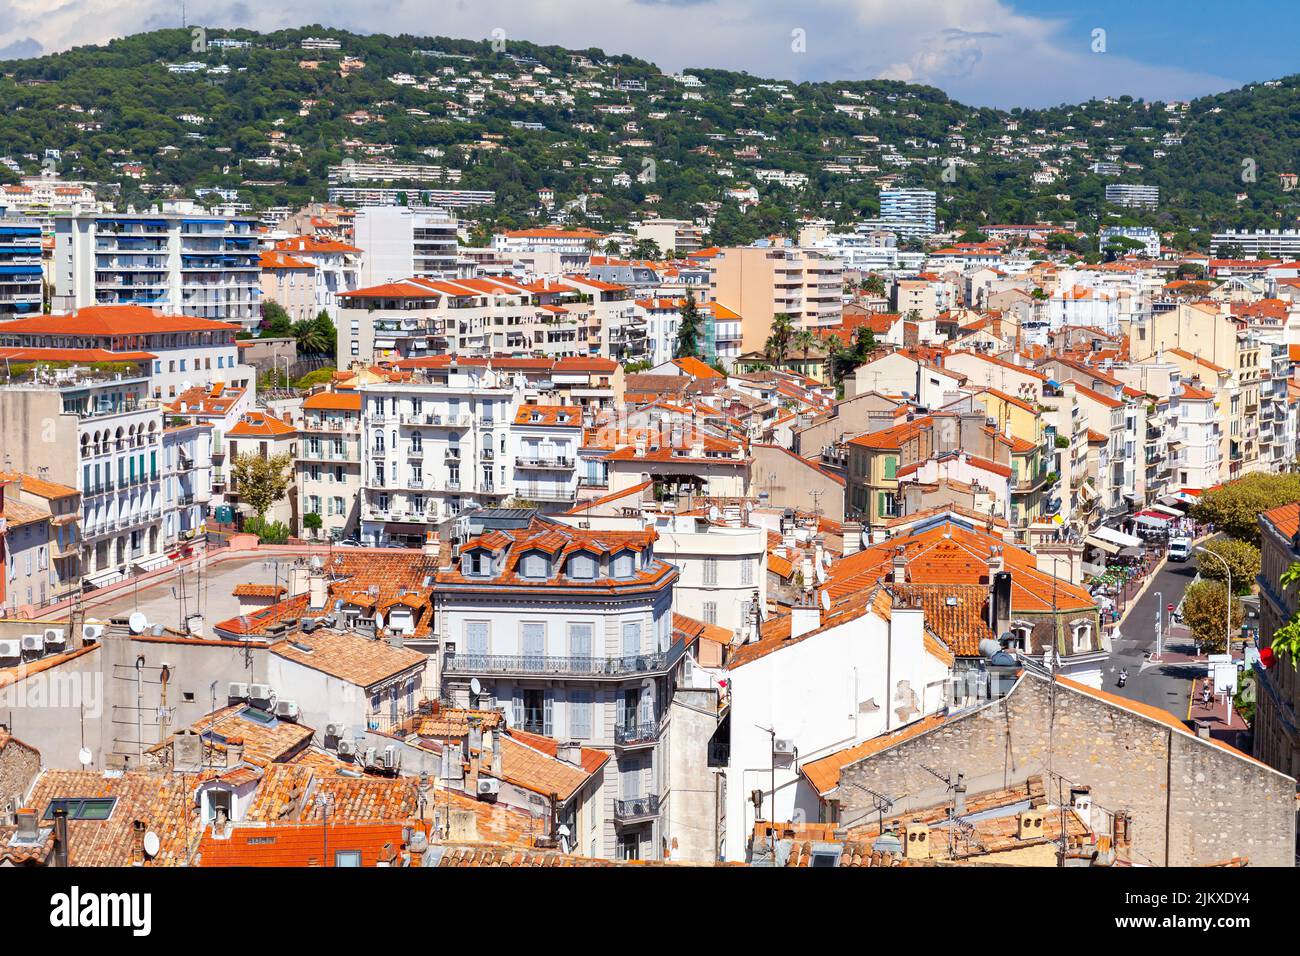 Les maisons résidentielles avec des toits de tuiles rouges sont sous ciel nuageux par jour ensoleillé. Vue aérienne de la vieille ville de Cannes, France Banque D'Images